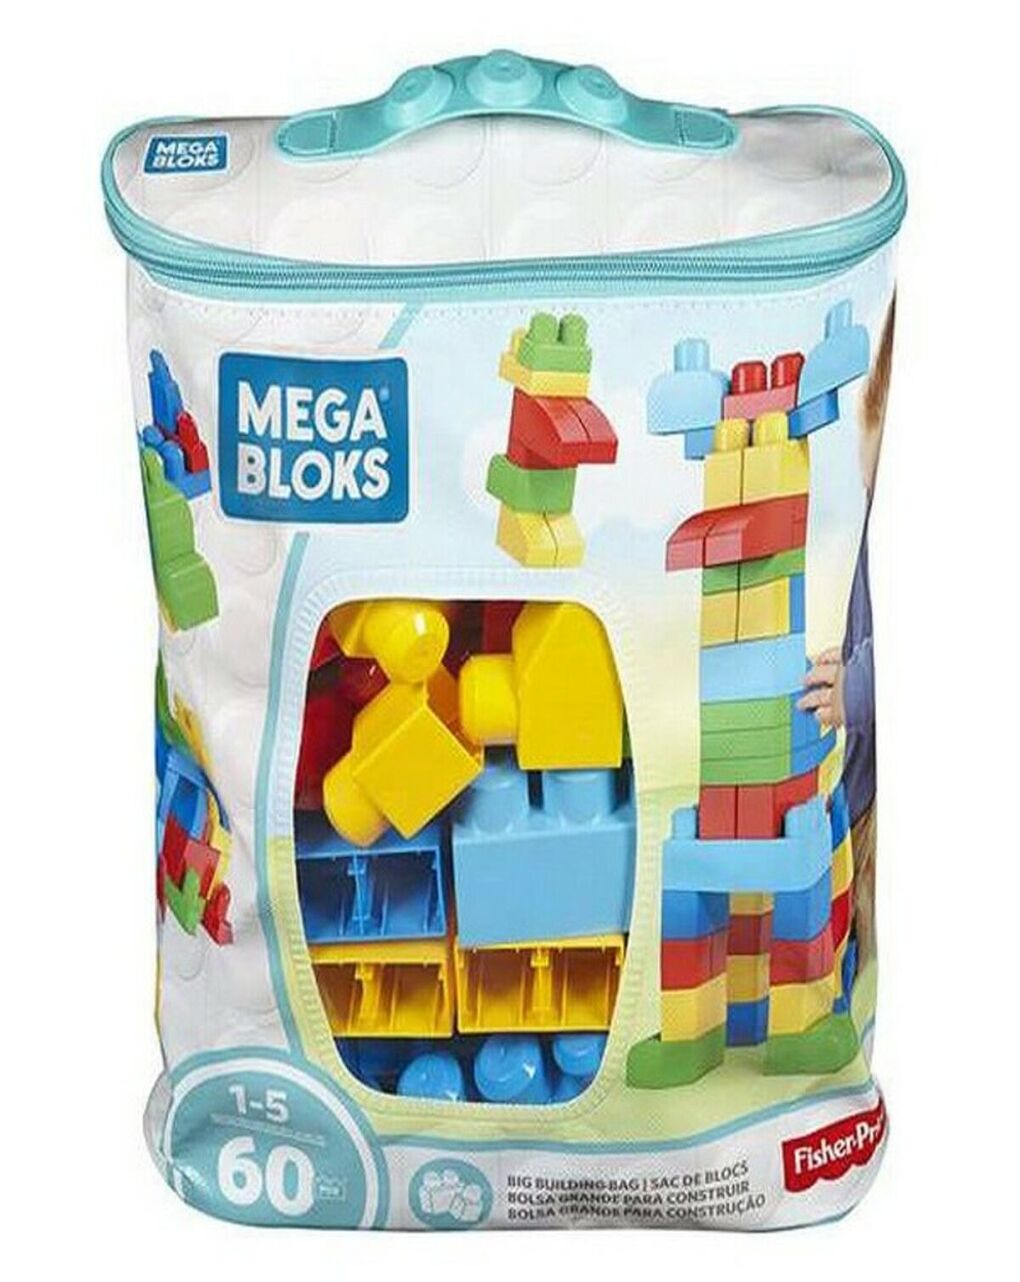 Mega bloks τσάντα με τουβλάκια 60 τμχ cyp67 - Mega bloks